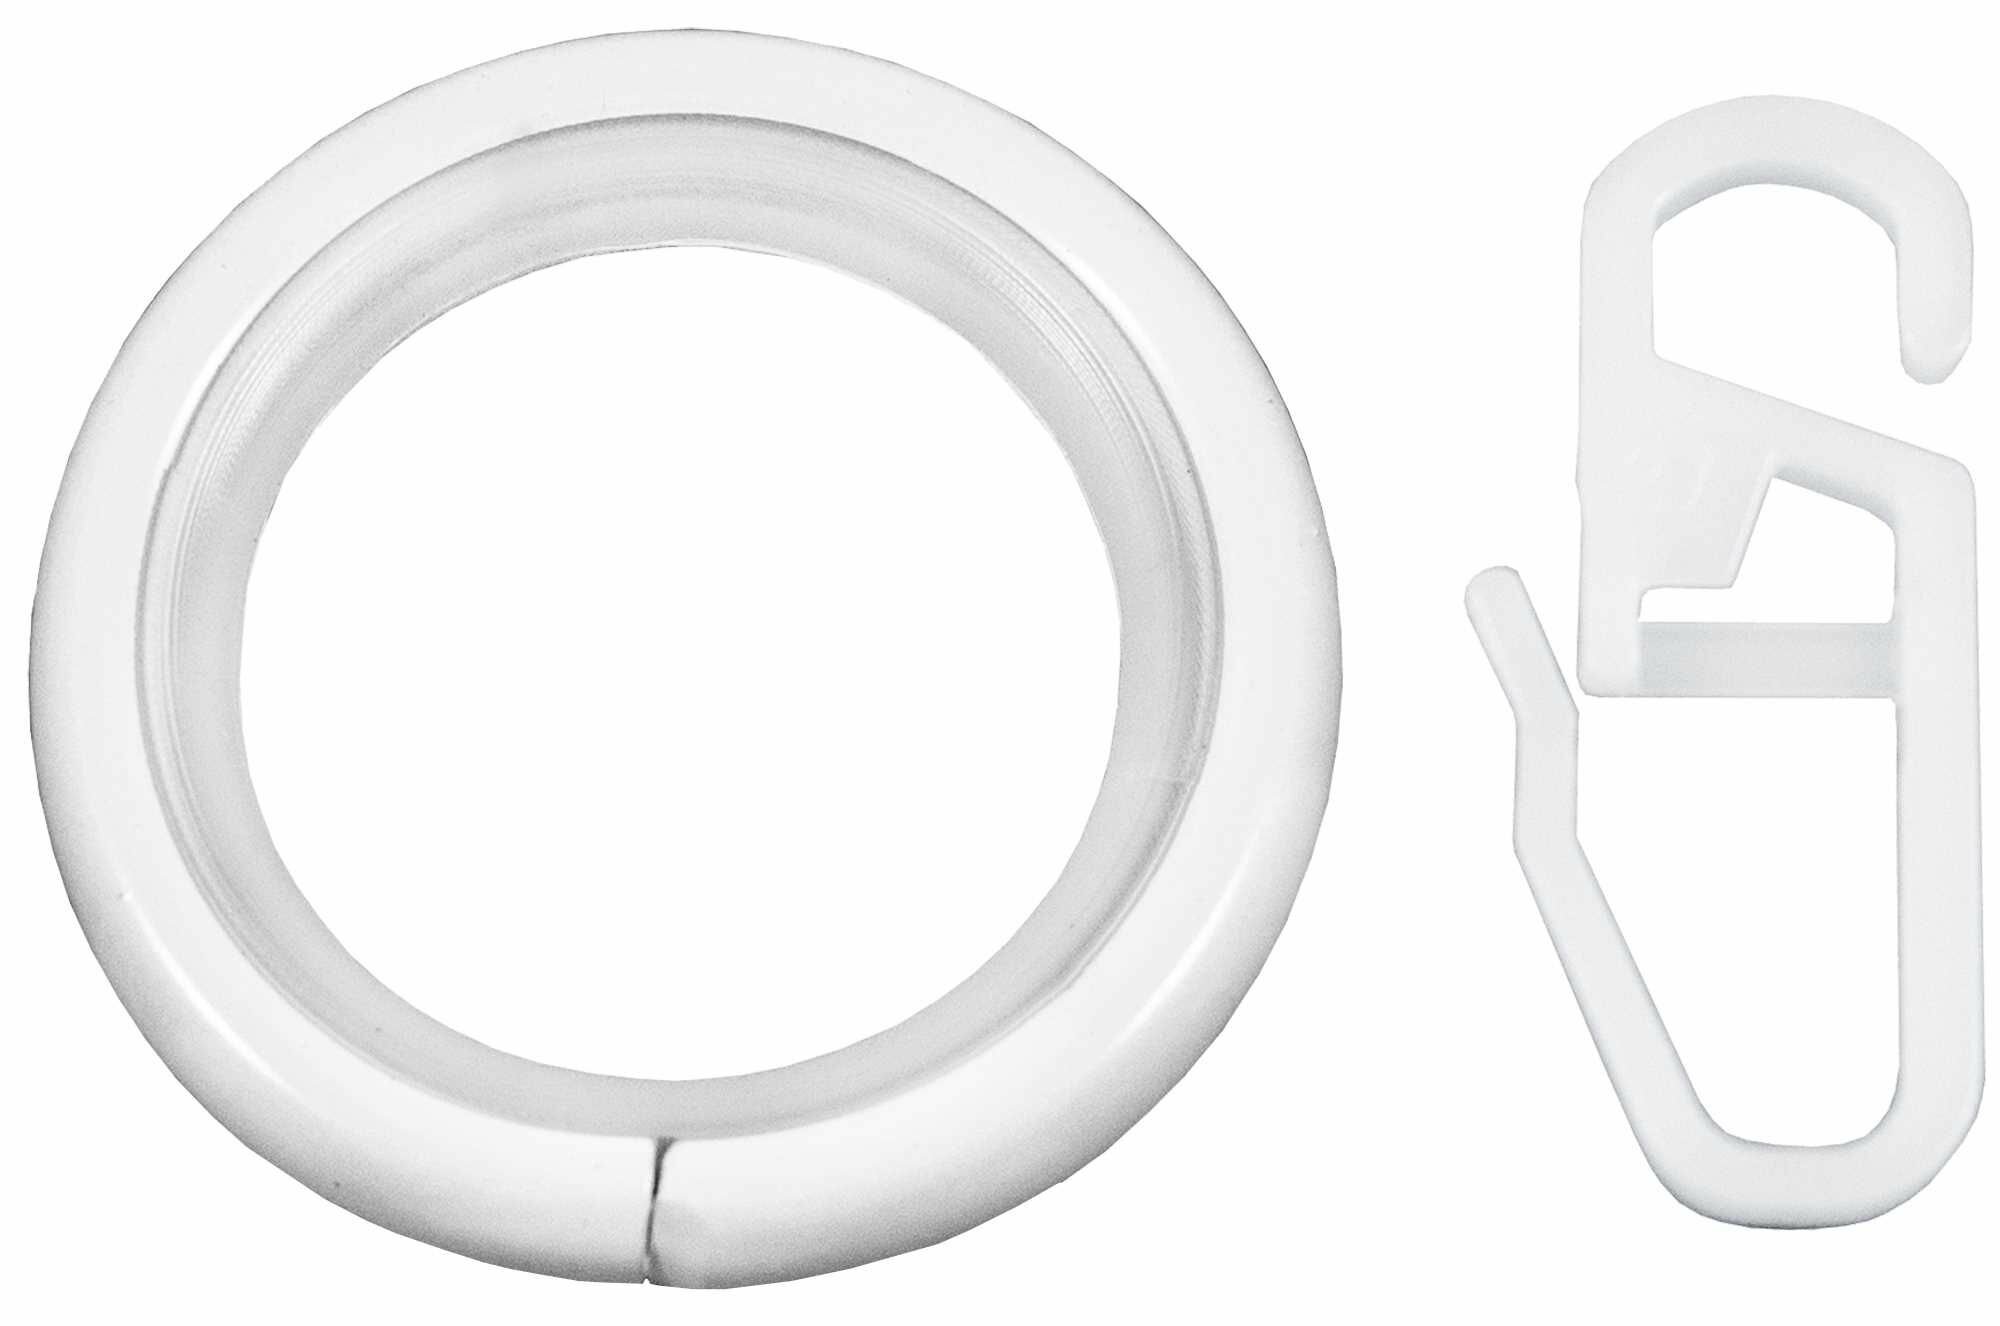 Кольцо с крючком металл цвет белый глянец, 2 см, 10 шт.